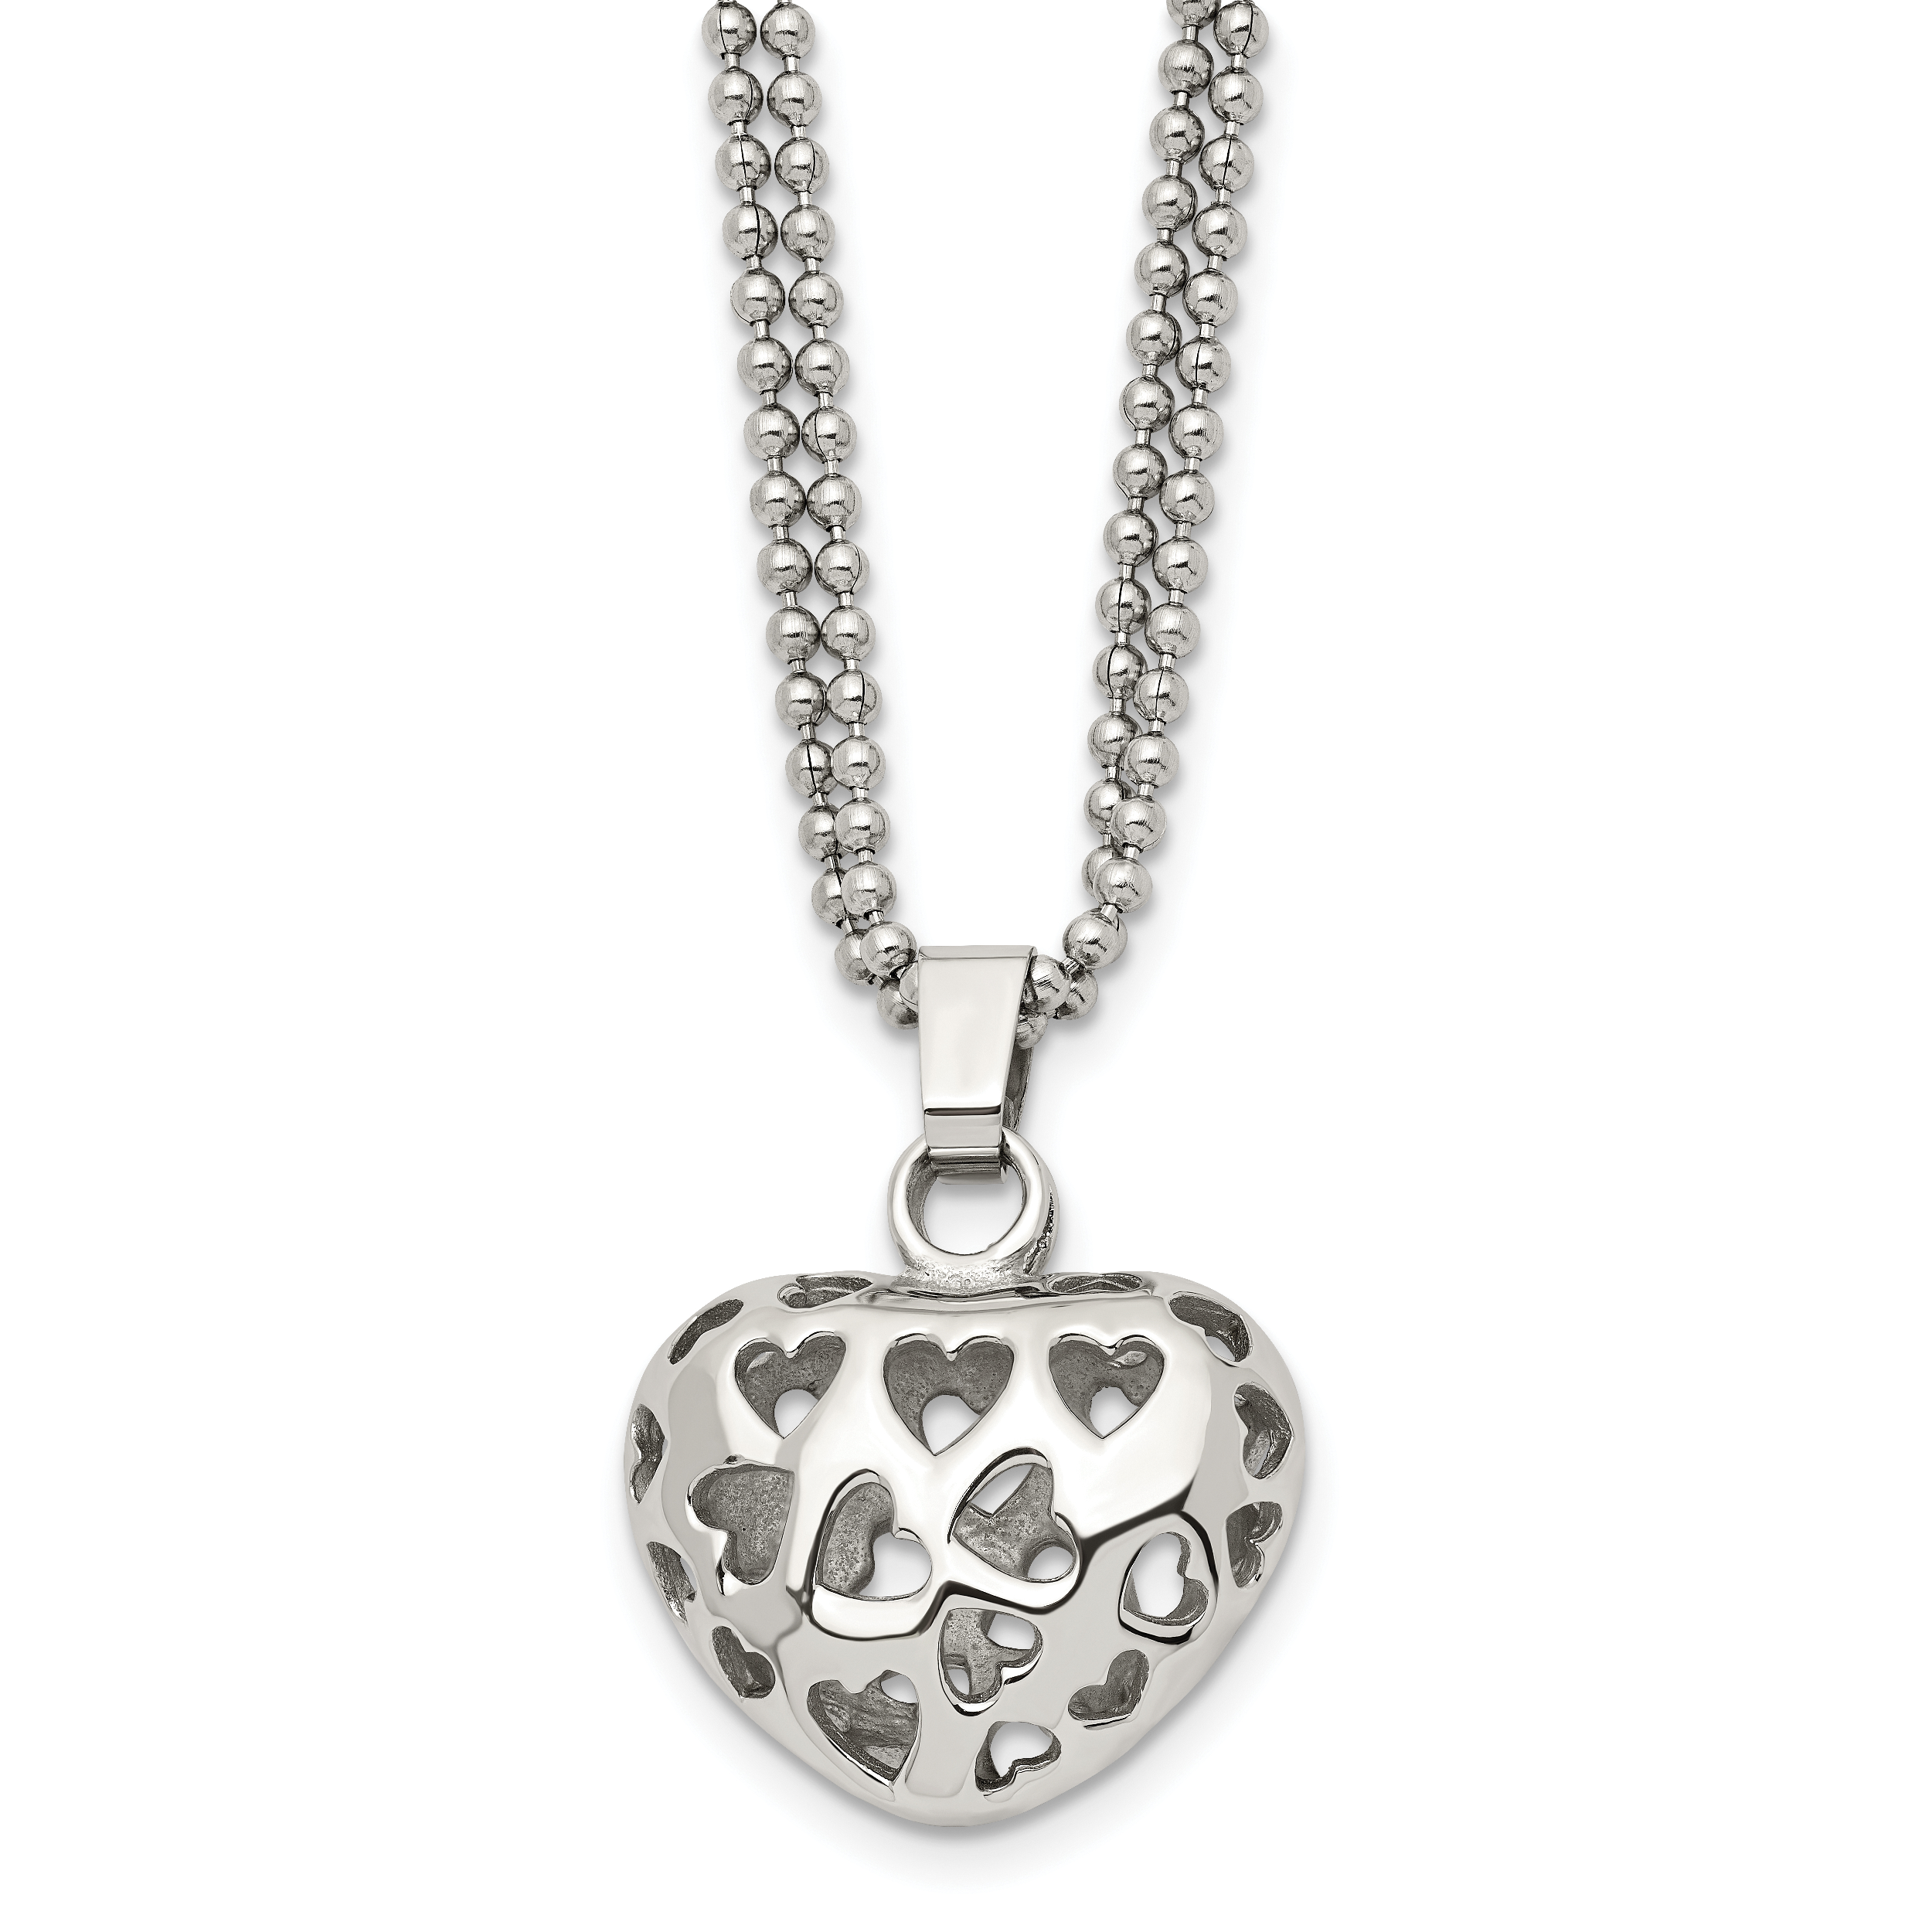 Stainless Steel Puffed Heart w/ Heart Cutouts 22in Necklace SRN600 | eBay